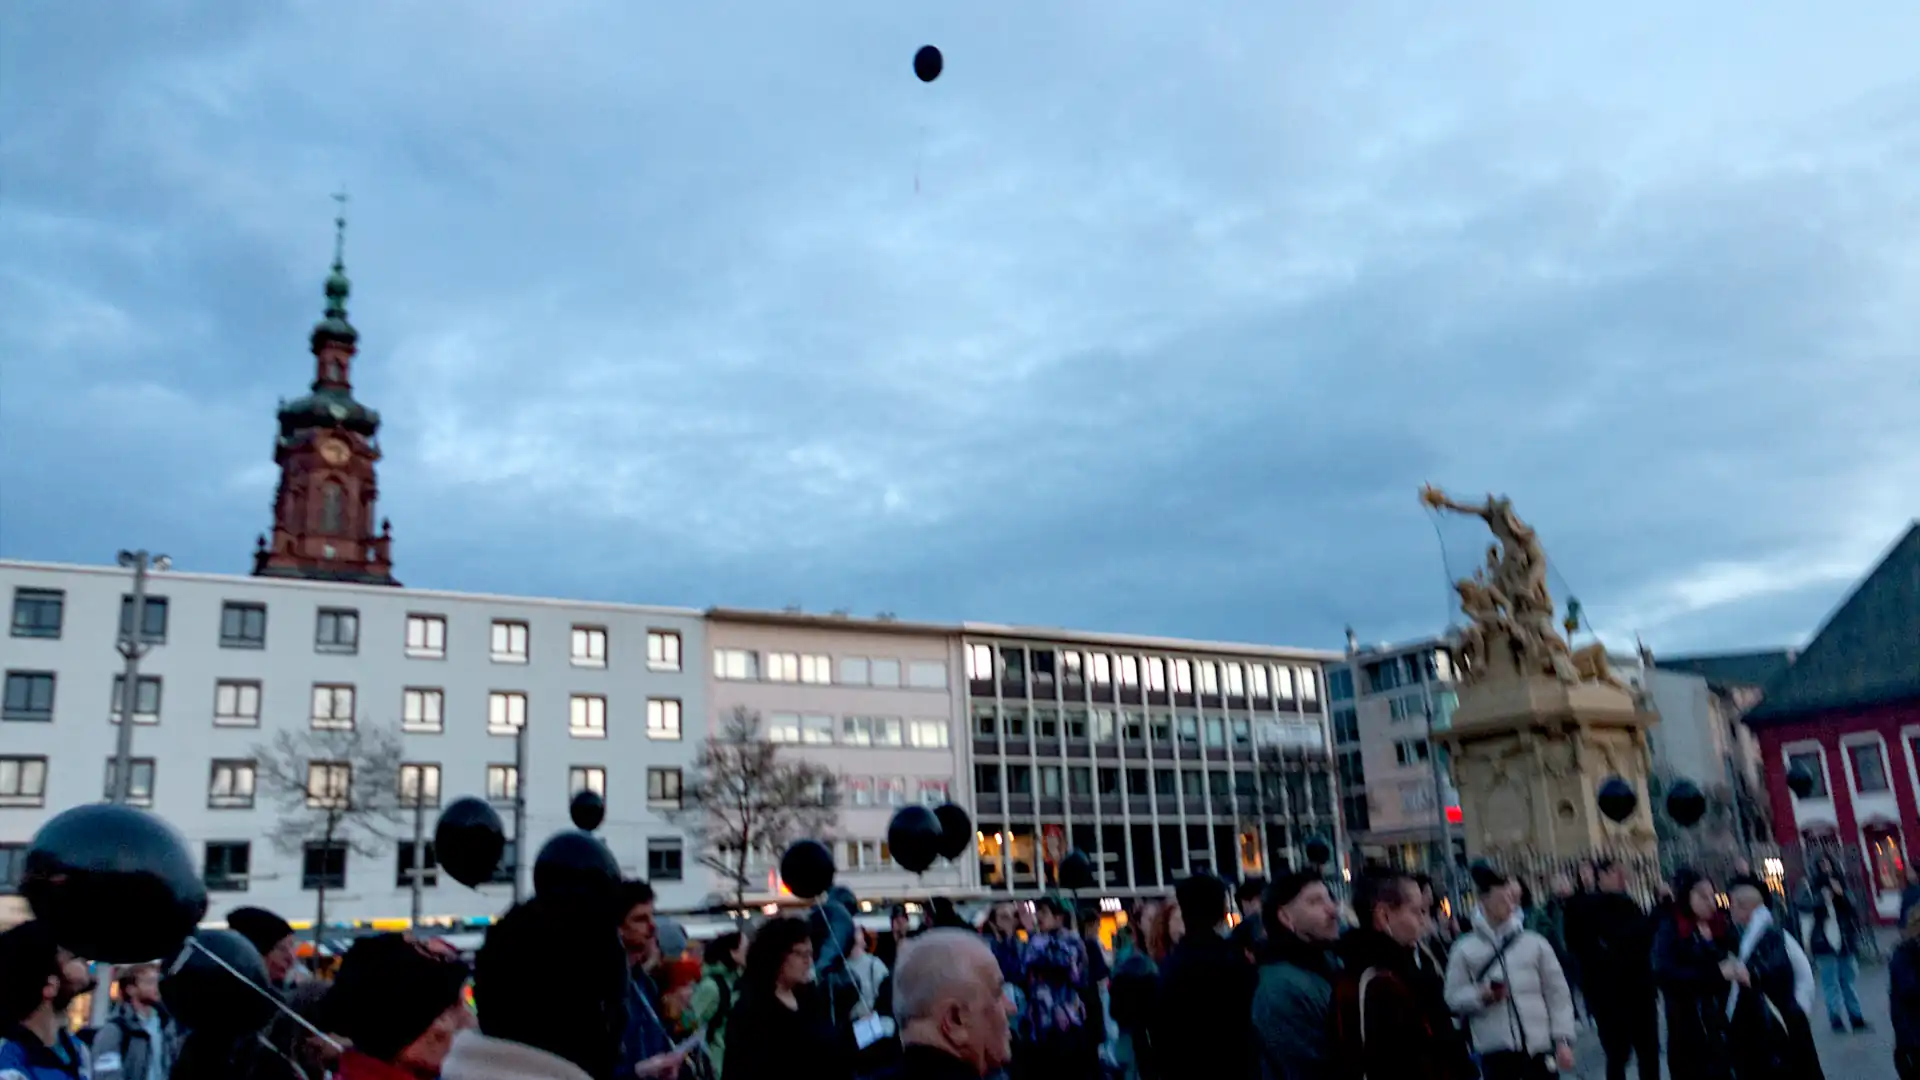 Bild von einer Menschenmenge auf dem Marktplatz mit schwarzen Luftballons. Oben im Bild schwebt ein Luftballon.